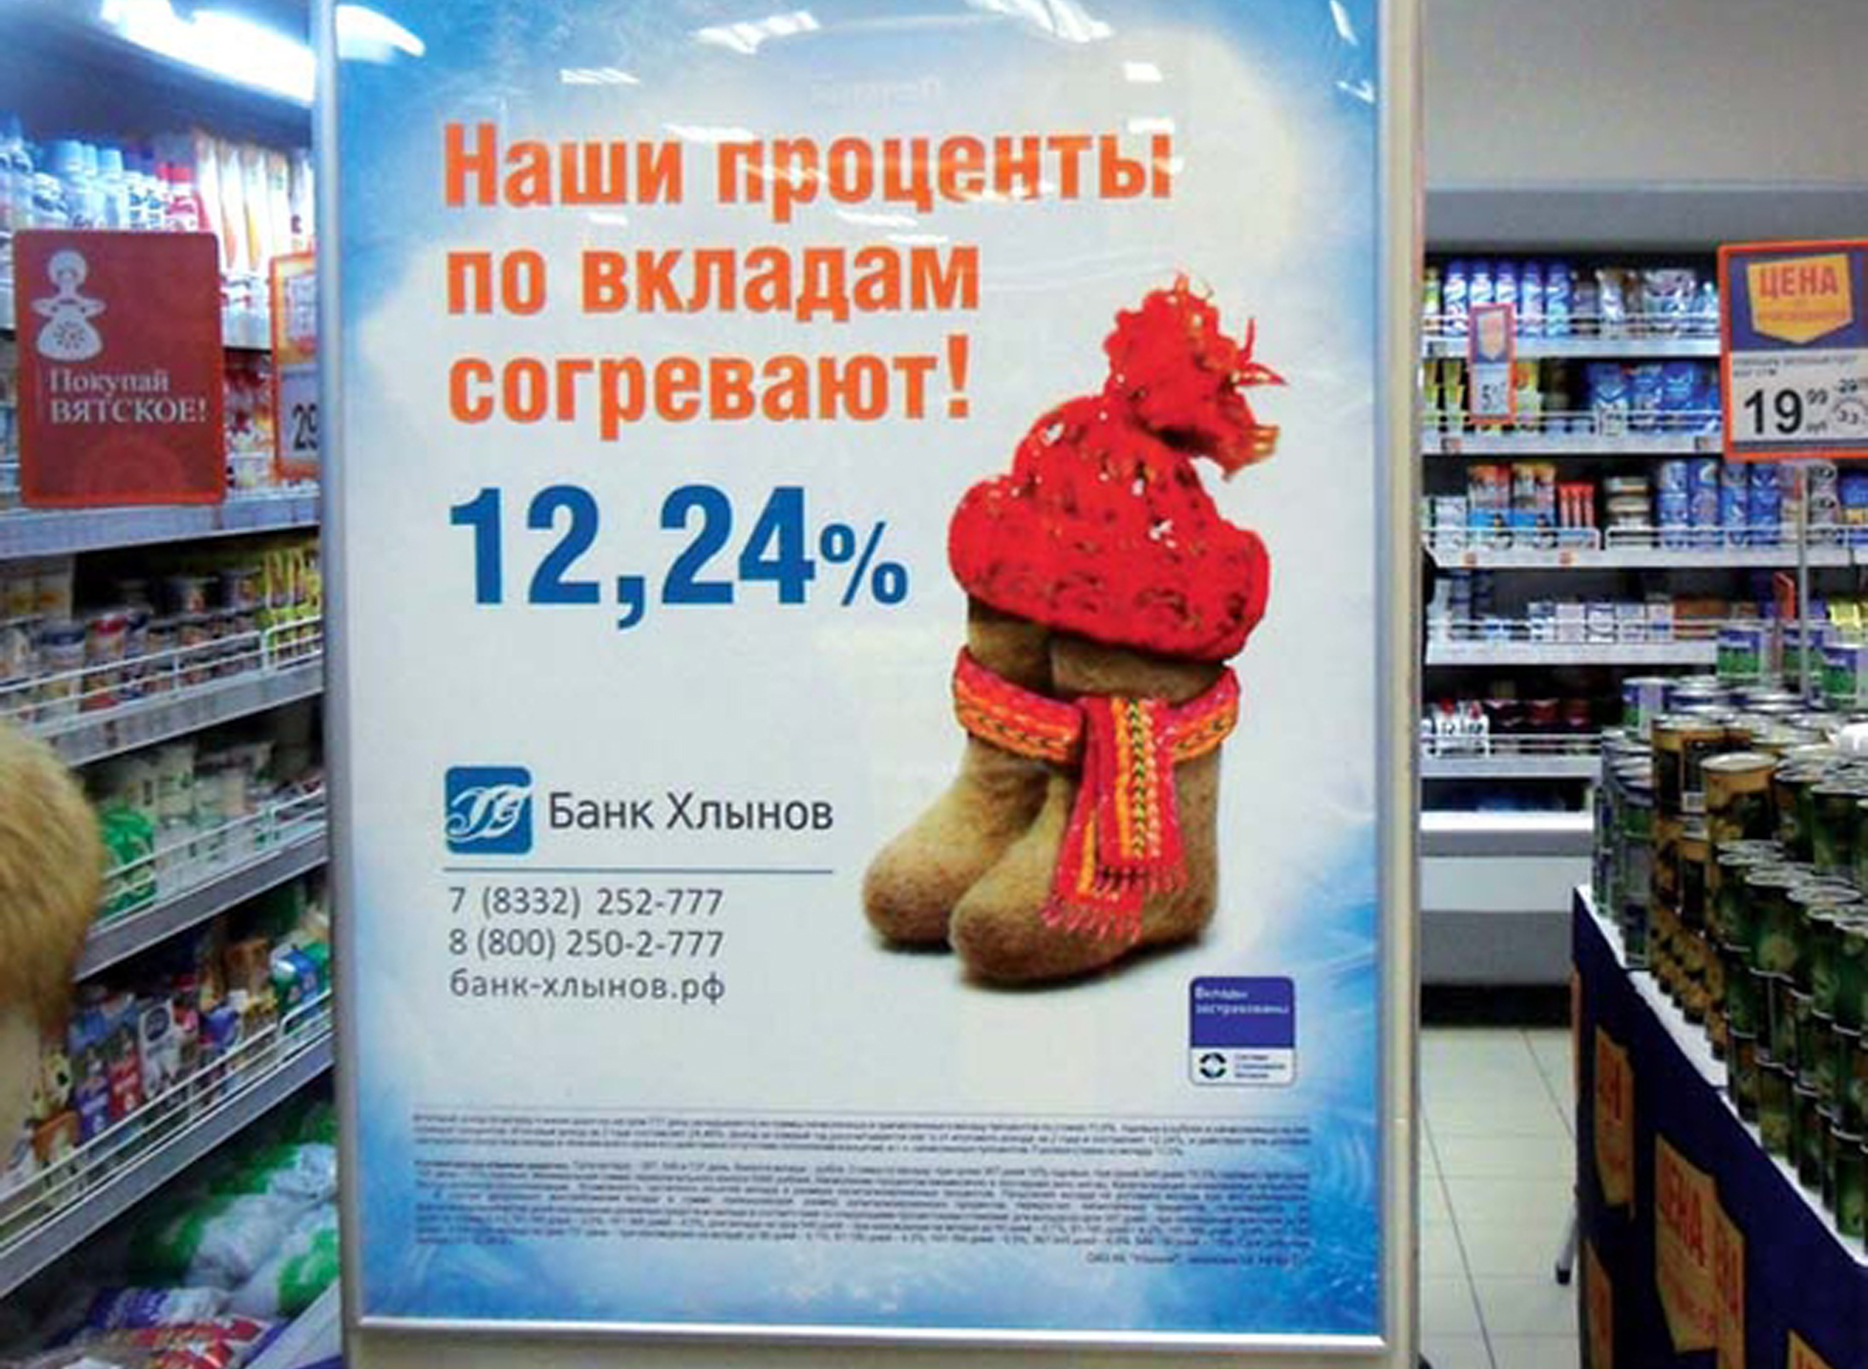 Рекламные плакаты магазинов